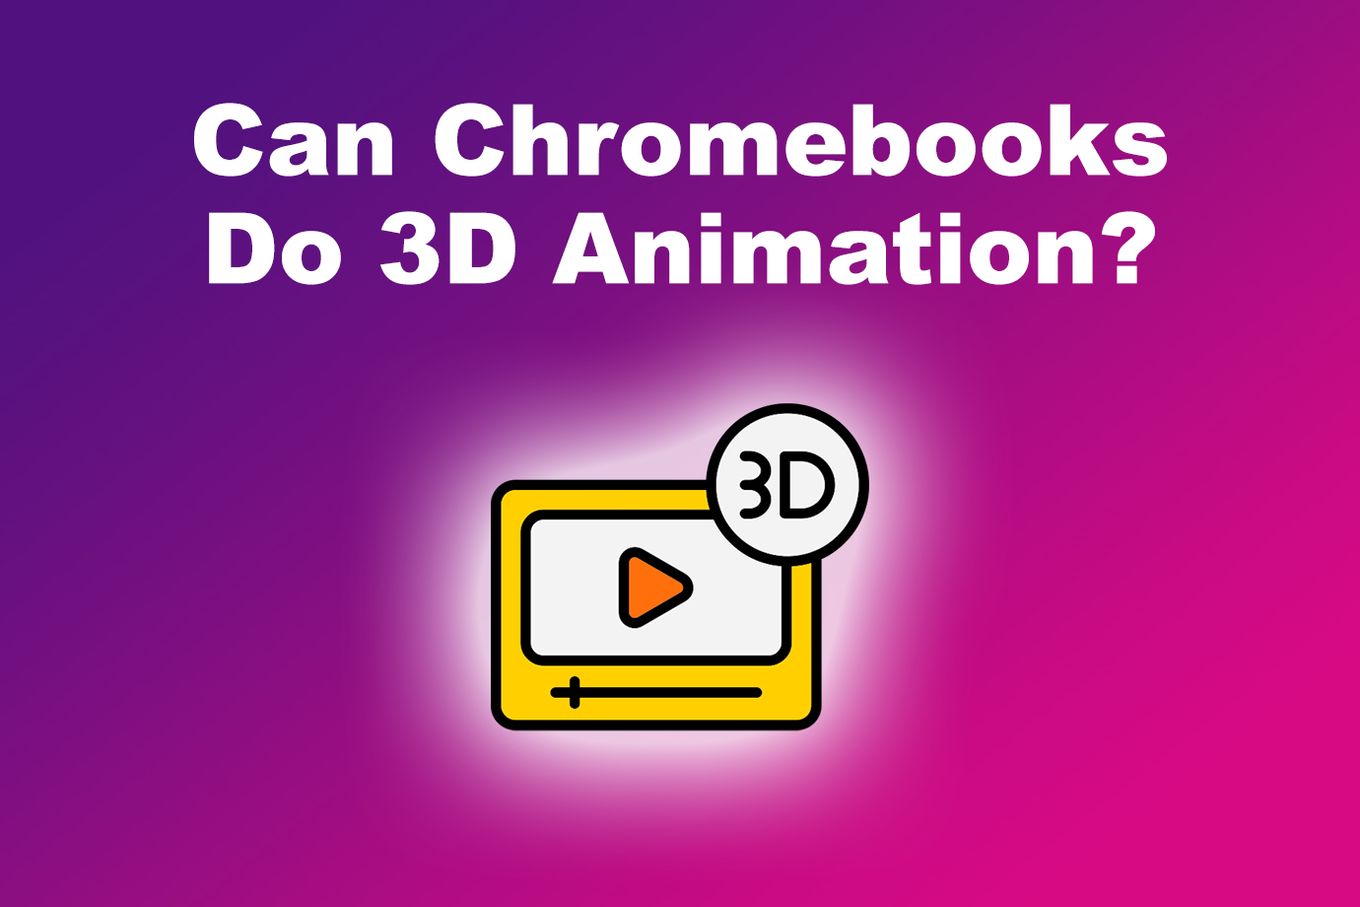 Can Chromebooks Do 3D Animation?